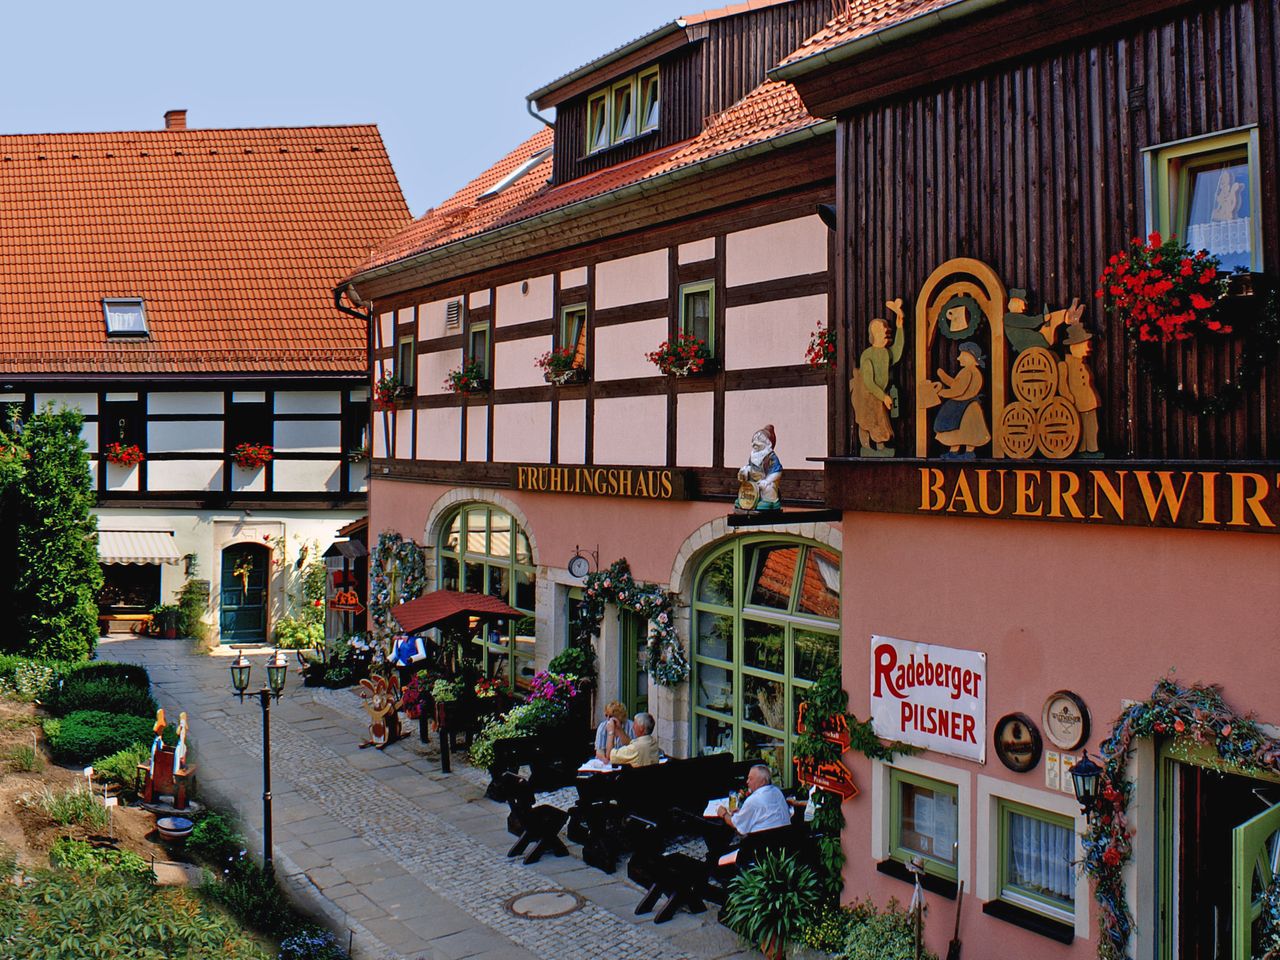 Sächsische Schweiz: 2 Tage Erlebnis-Familien-Spaß